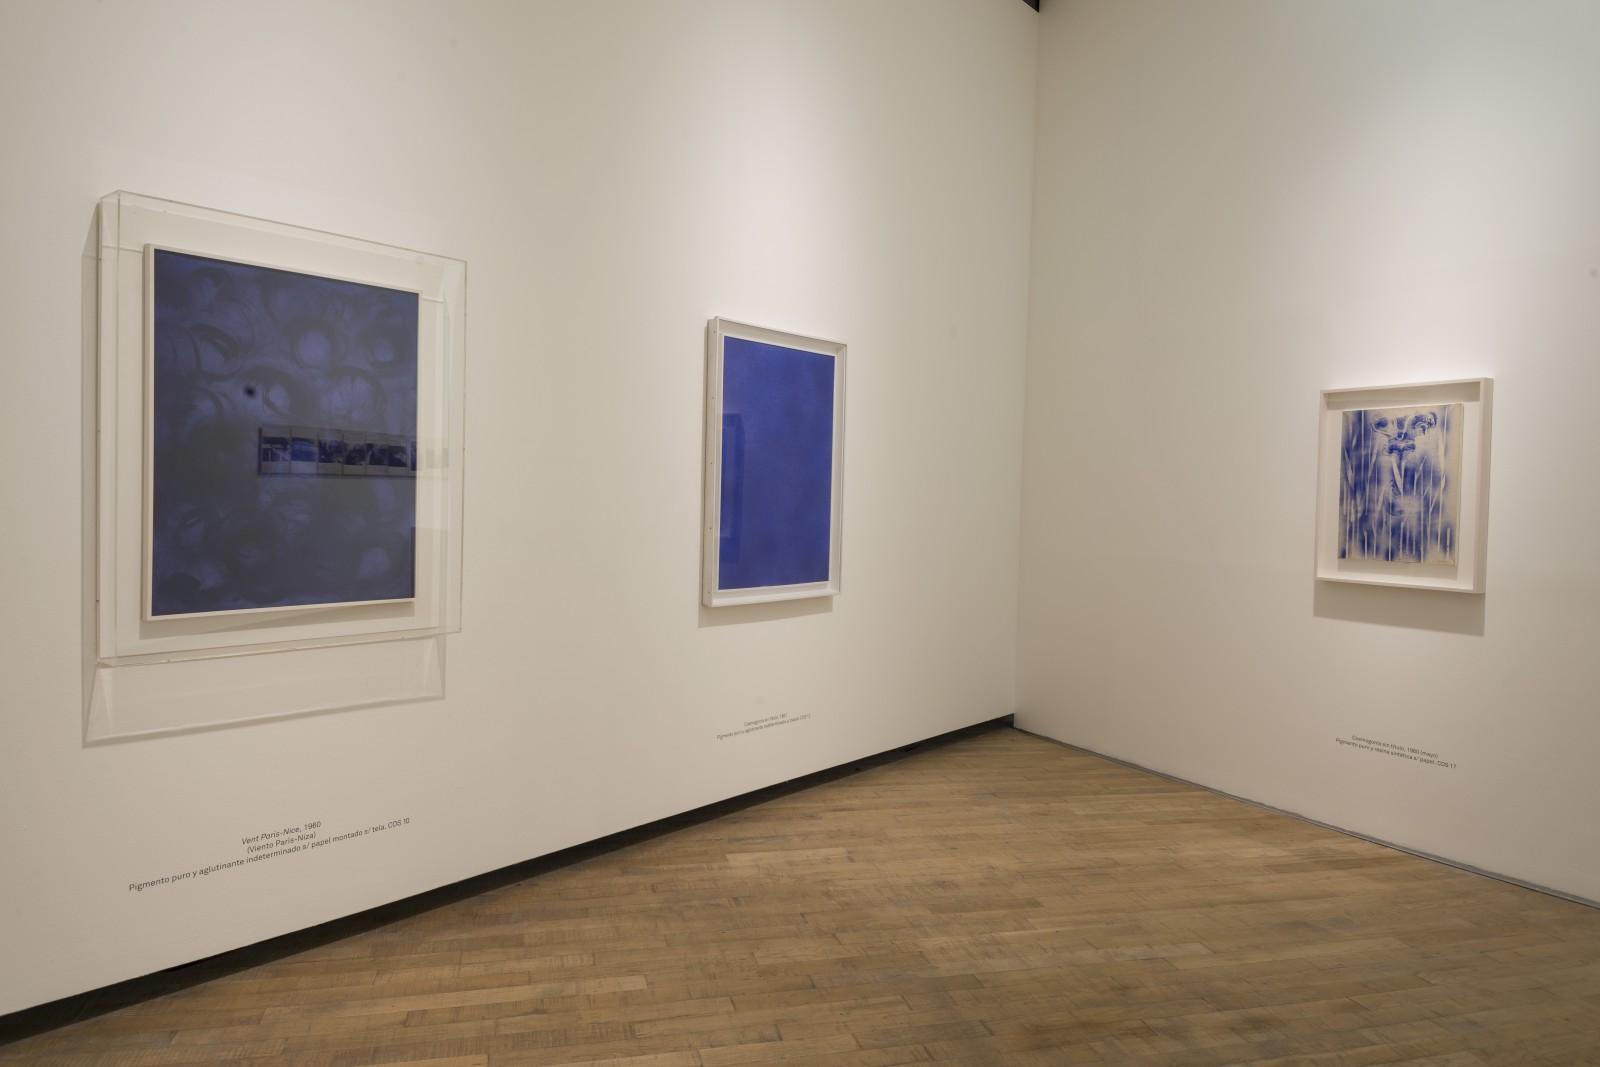 View of the exhibition "Yves Klein - Retrospectiva", PROA Fundación, 2017